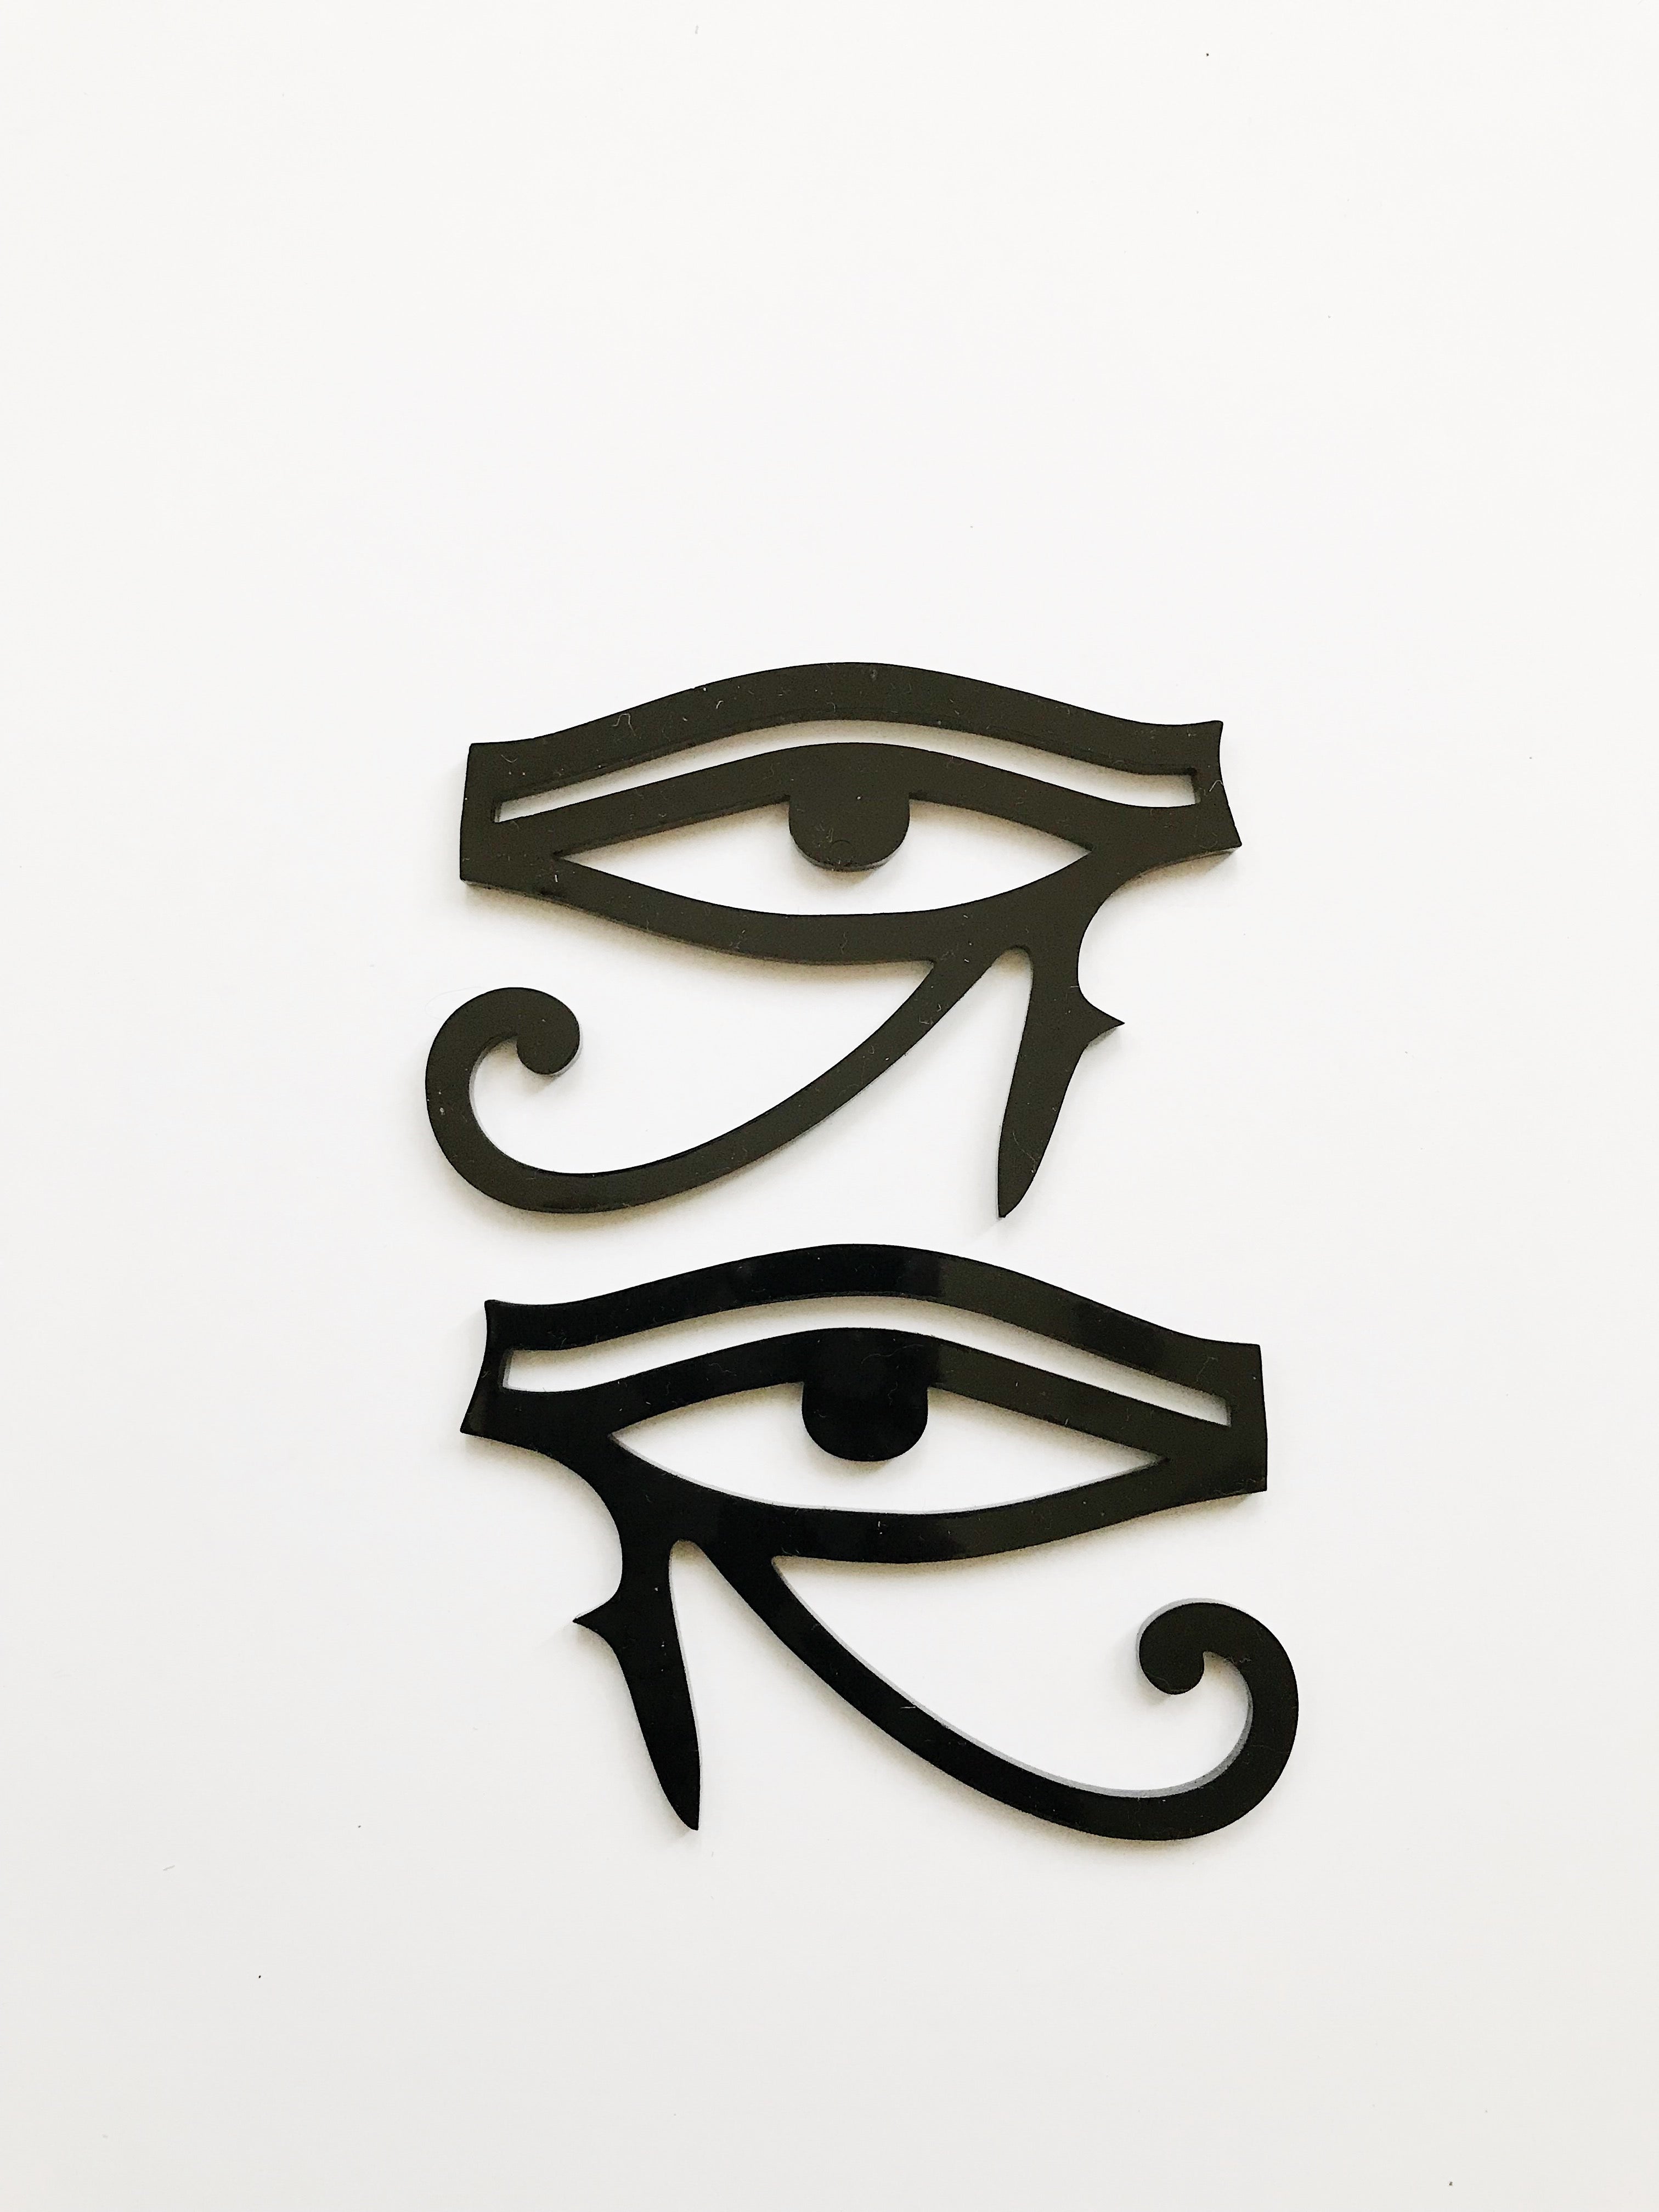 Eye of Horus Stud Earrings